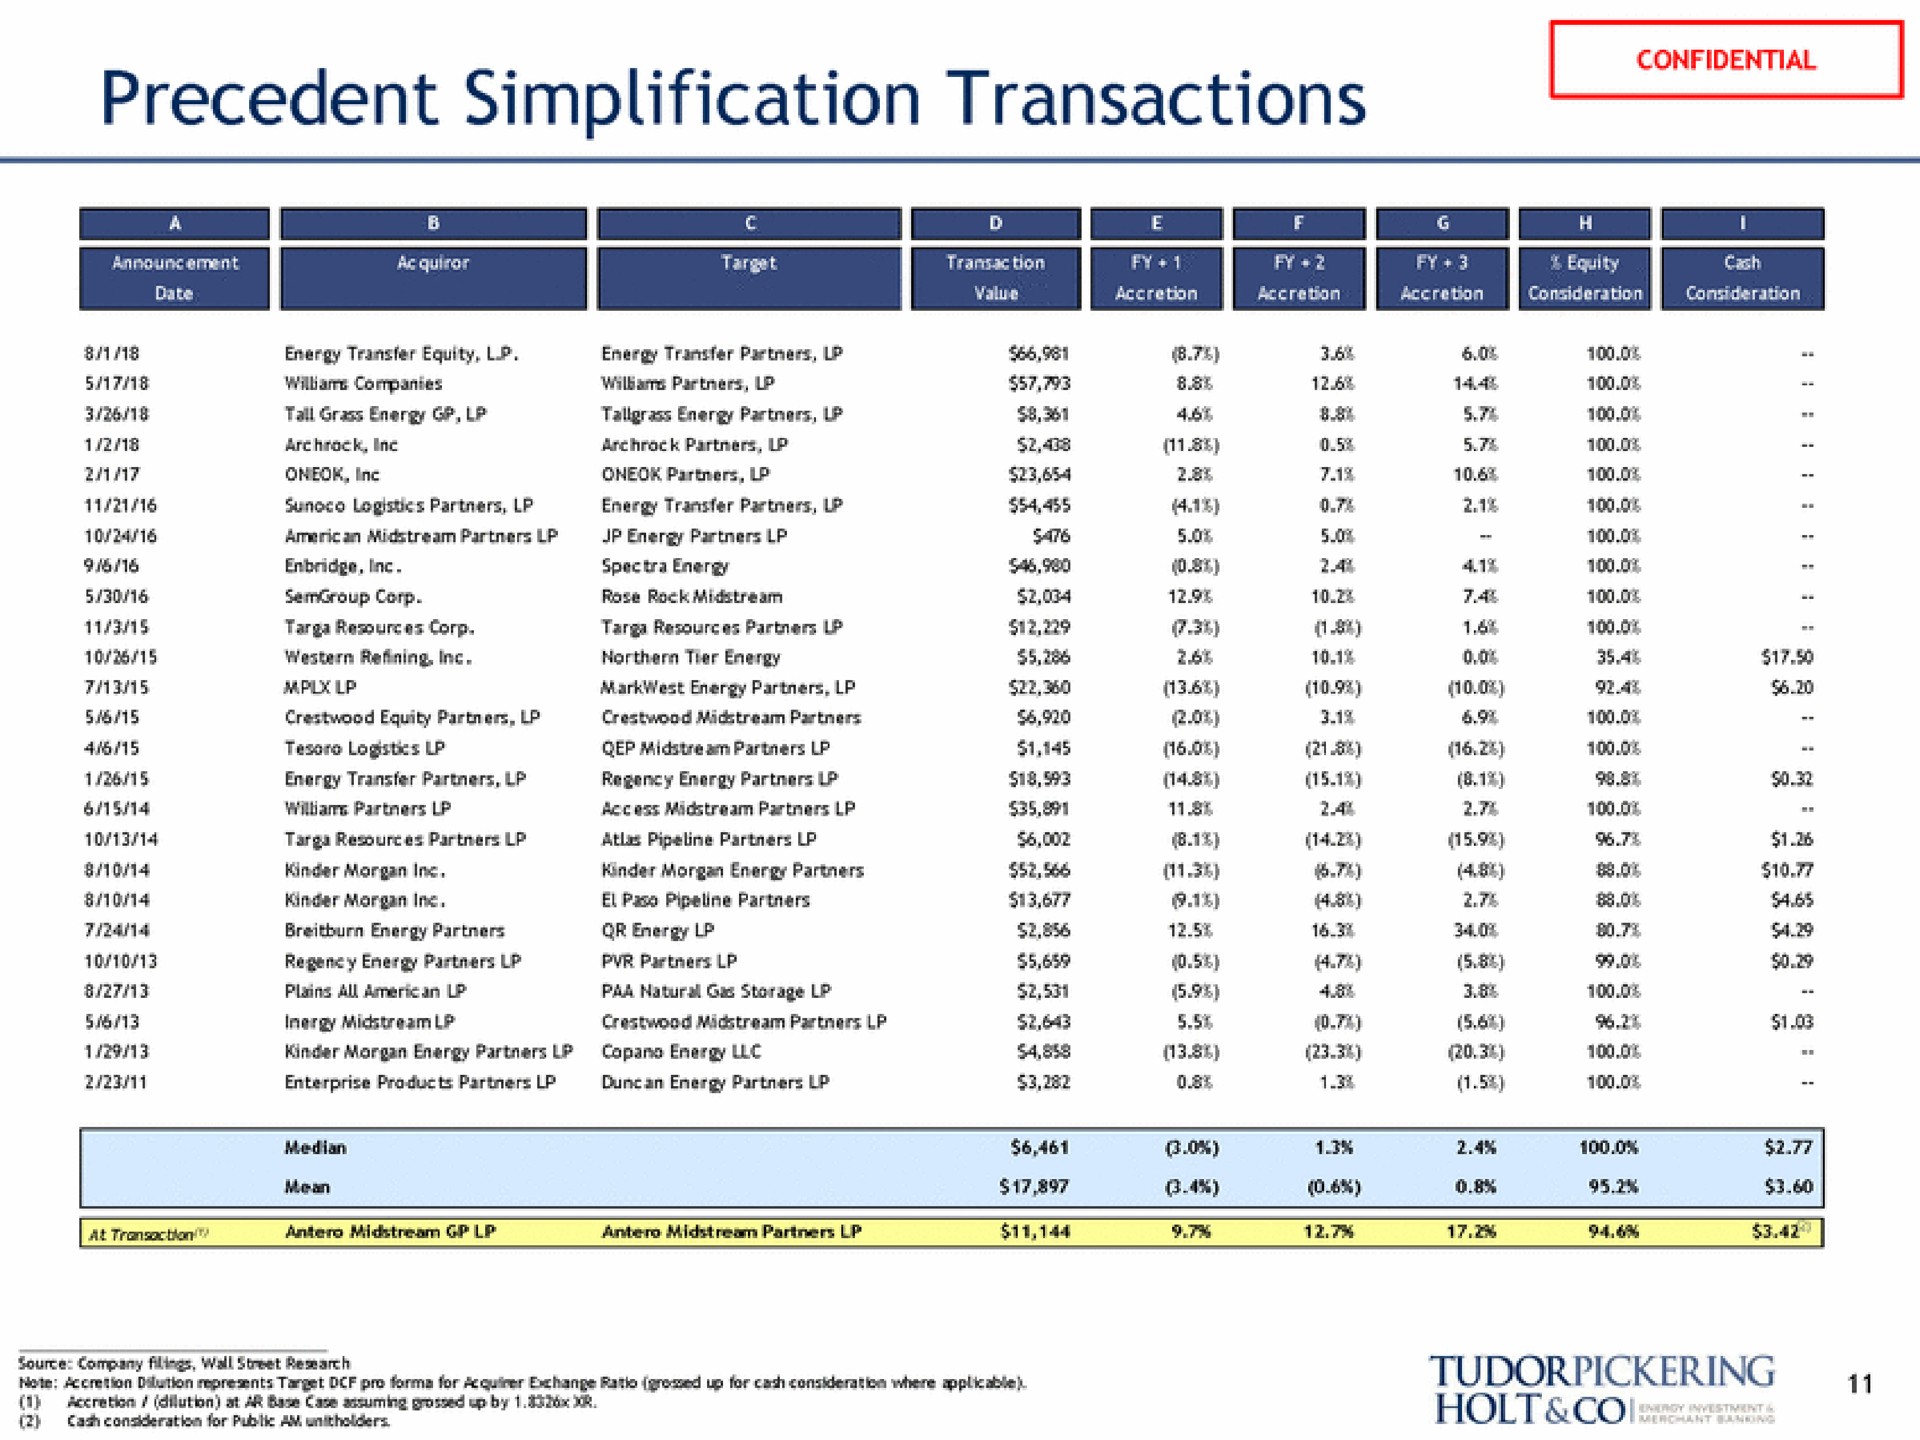 precedent simplification transactions | Tudor, Pickering, Holt & Co